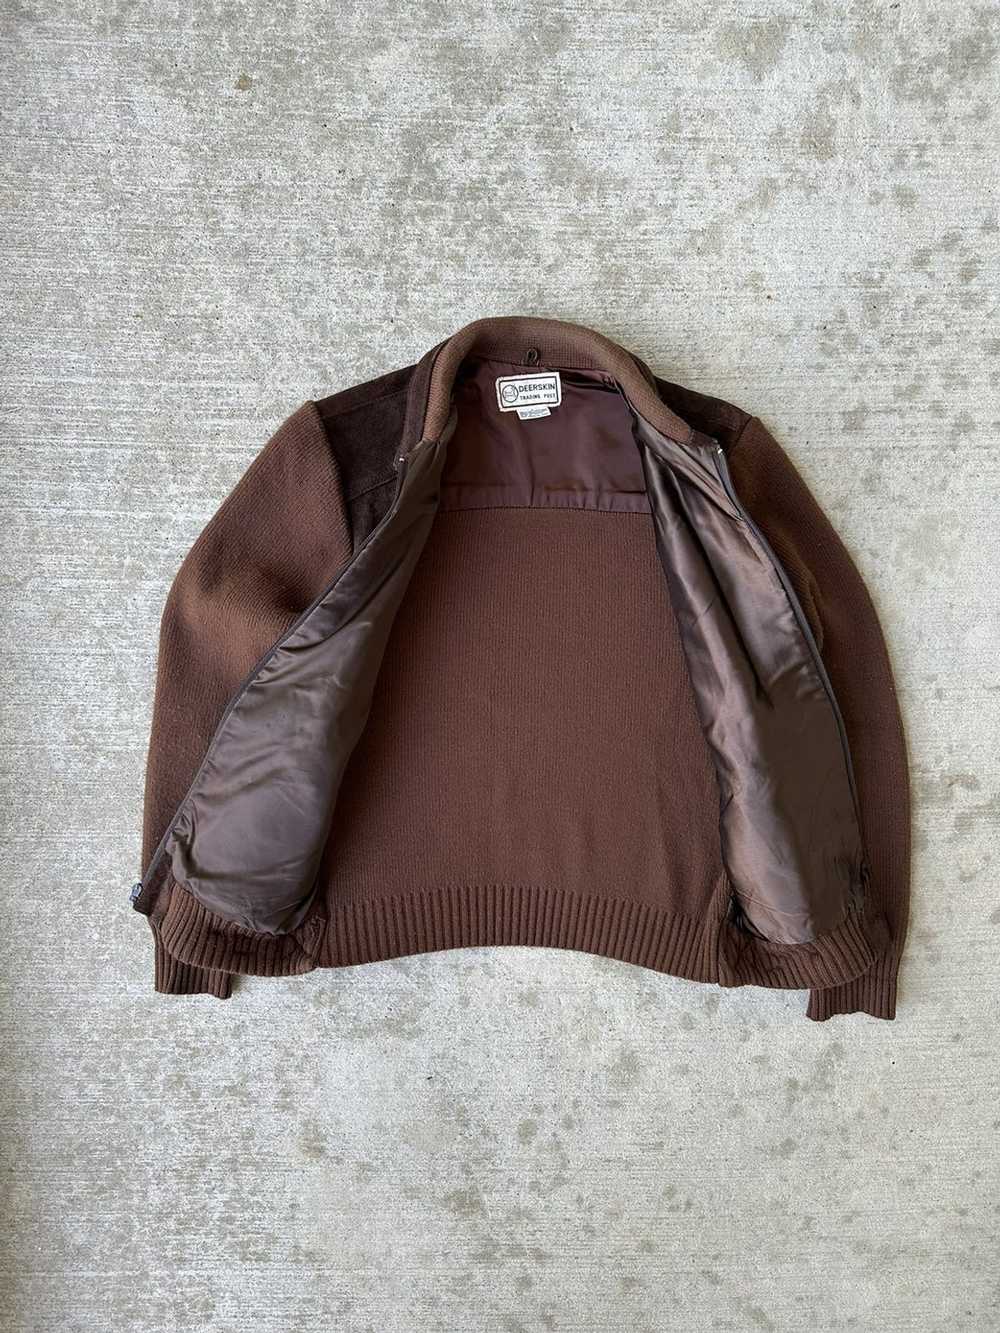 Genuine Leather × Retro Jacket × Vintage Vintage … - image 6